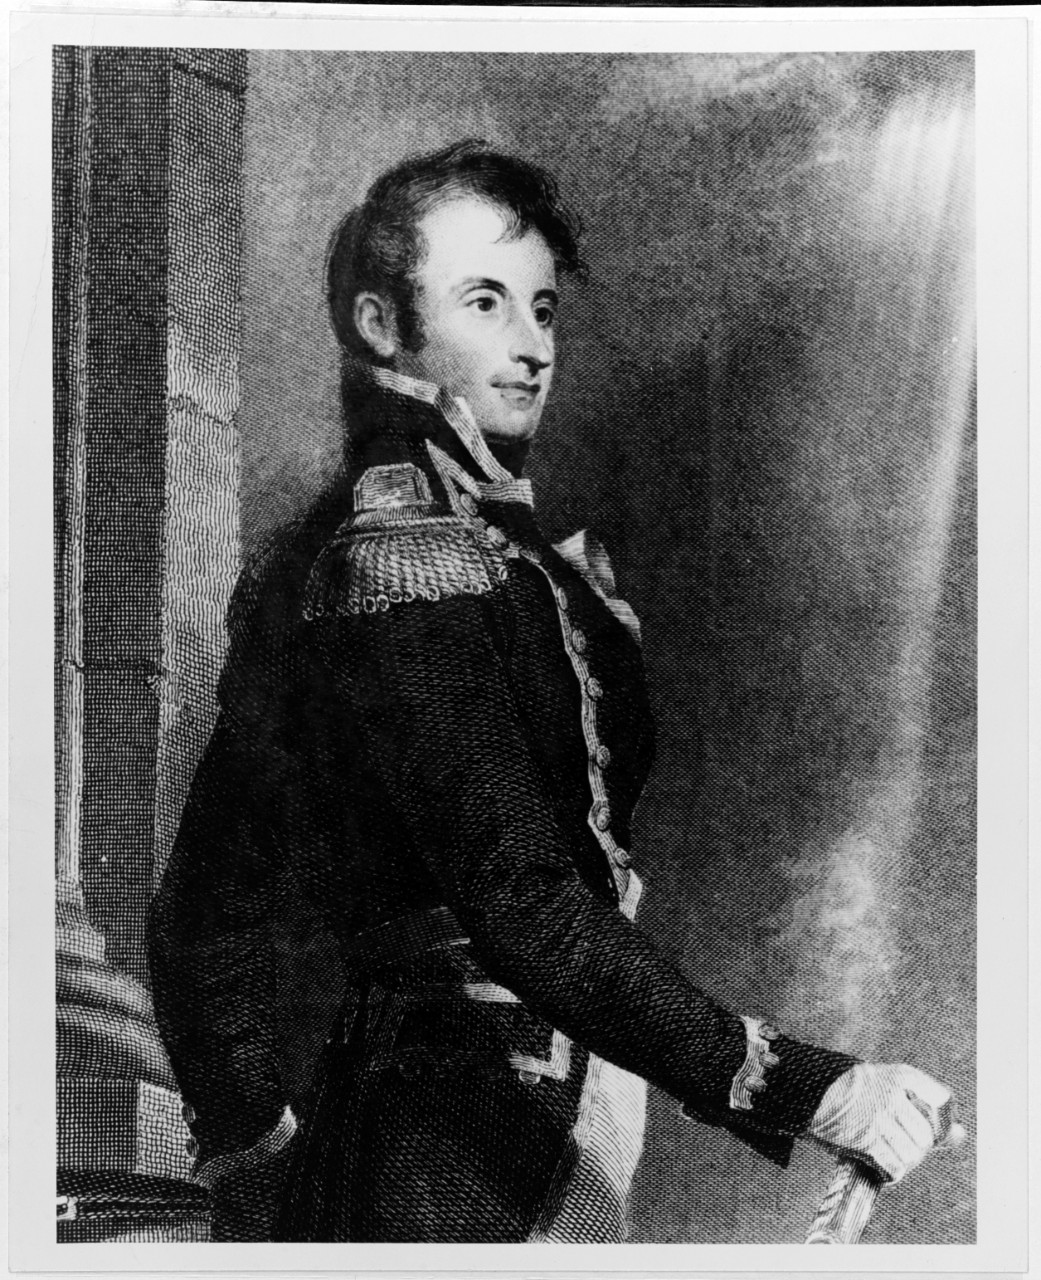 Decatur Stephen (1779-1820)